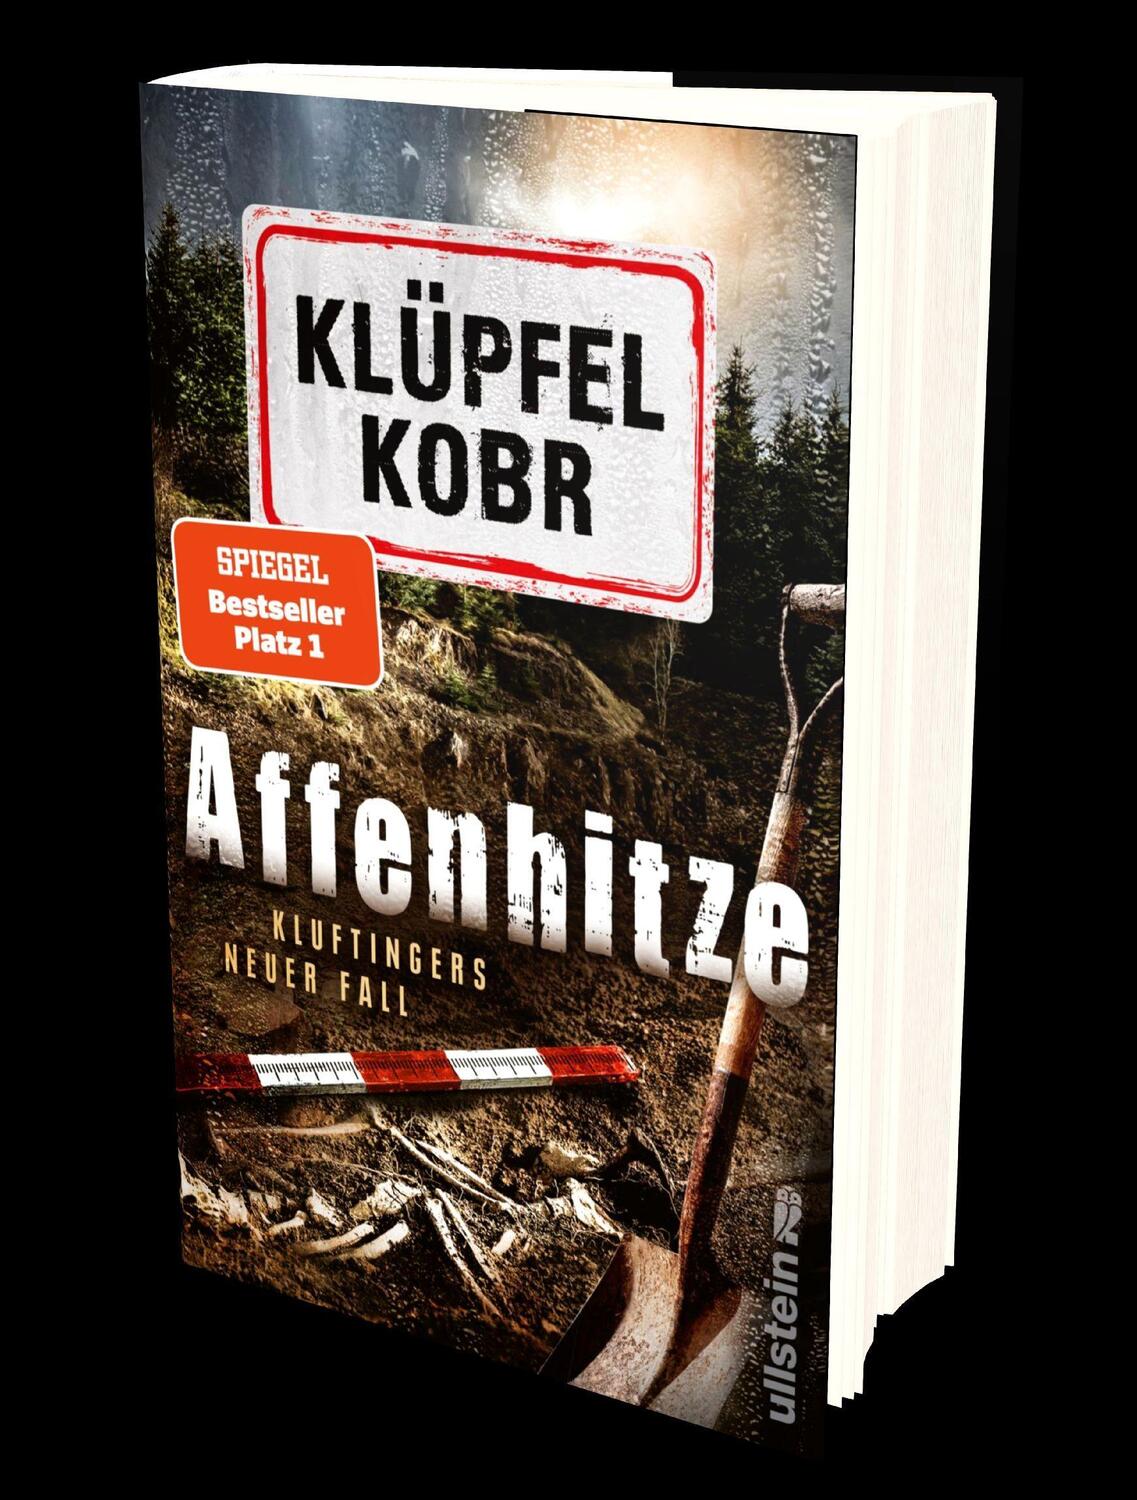 Bild: 9783550201462 | Affenhitze | Volker Klüpfel (u. a.) | Buch | Kluftinger | Deutsch